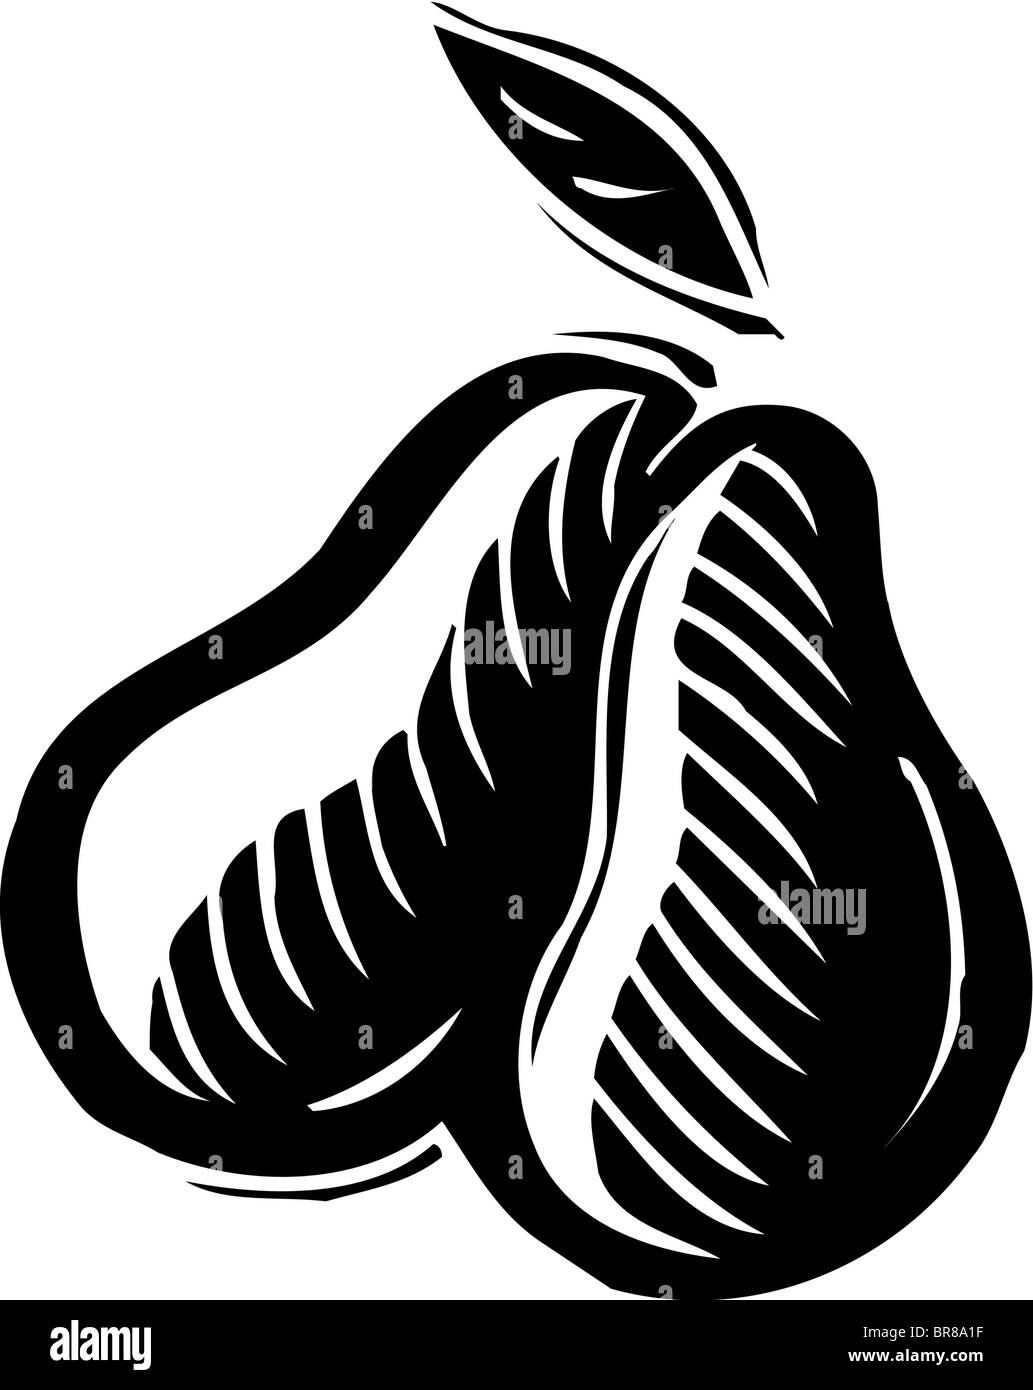 Eine grafische Darstellung von zwei Birnen in schwarz und weiß Stockfoto